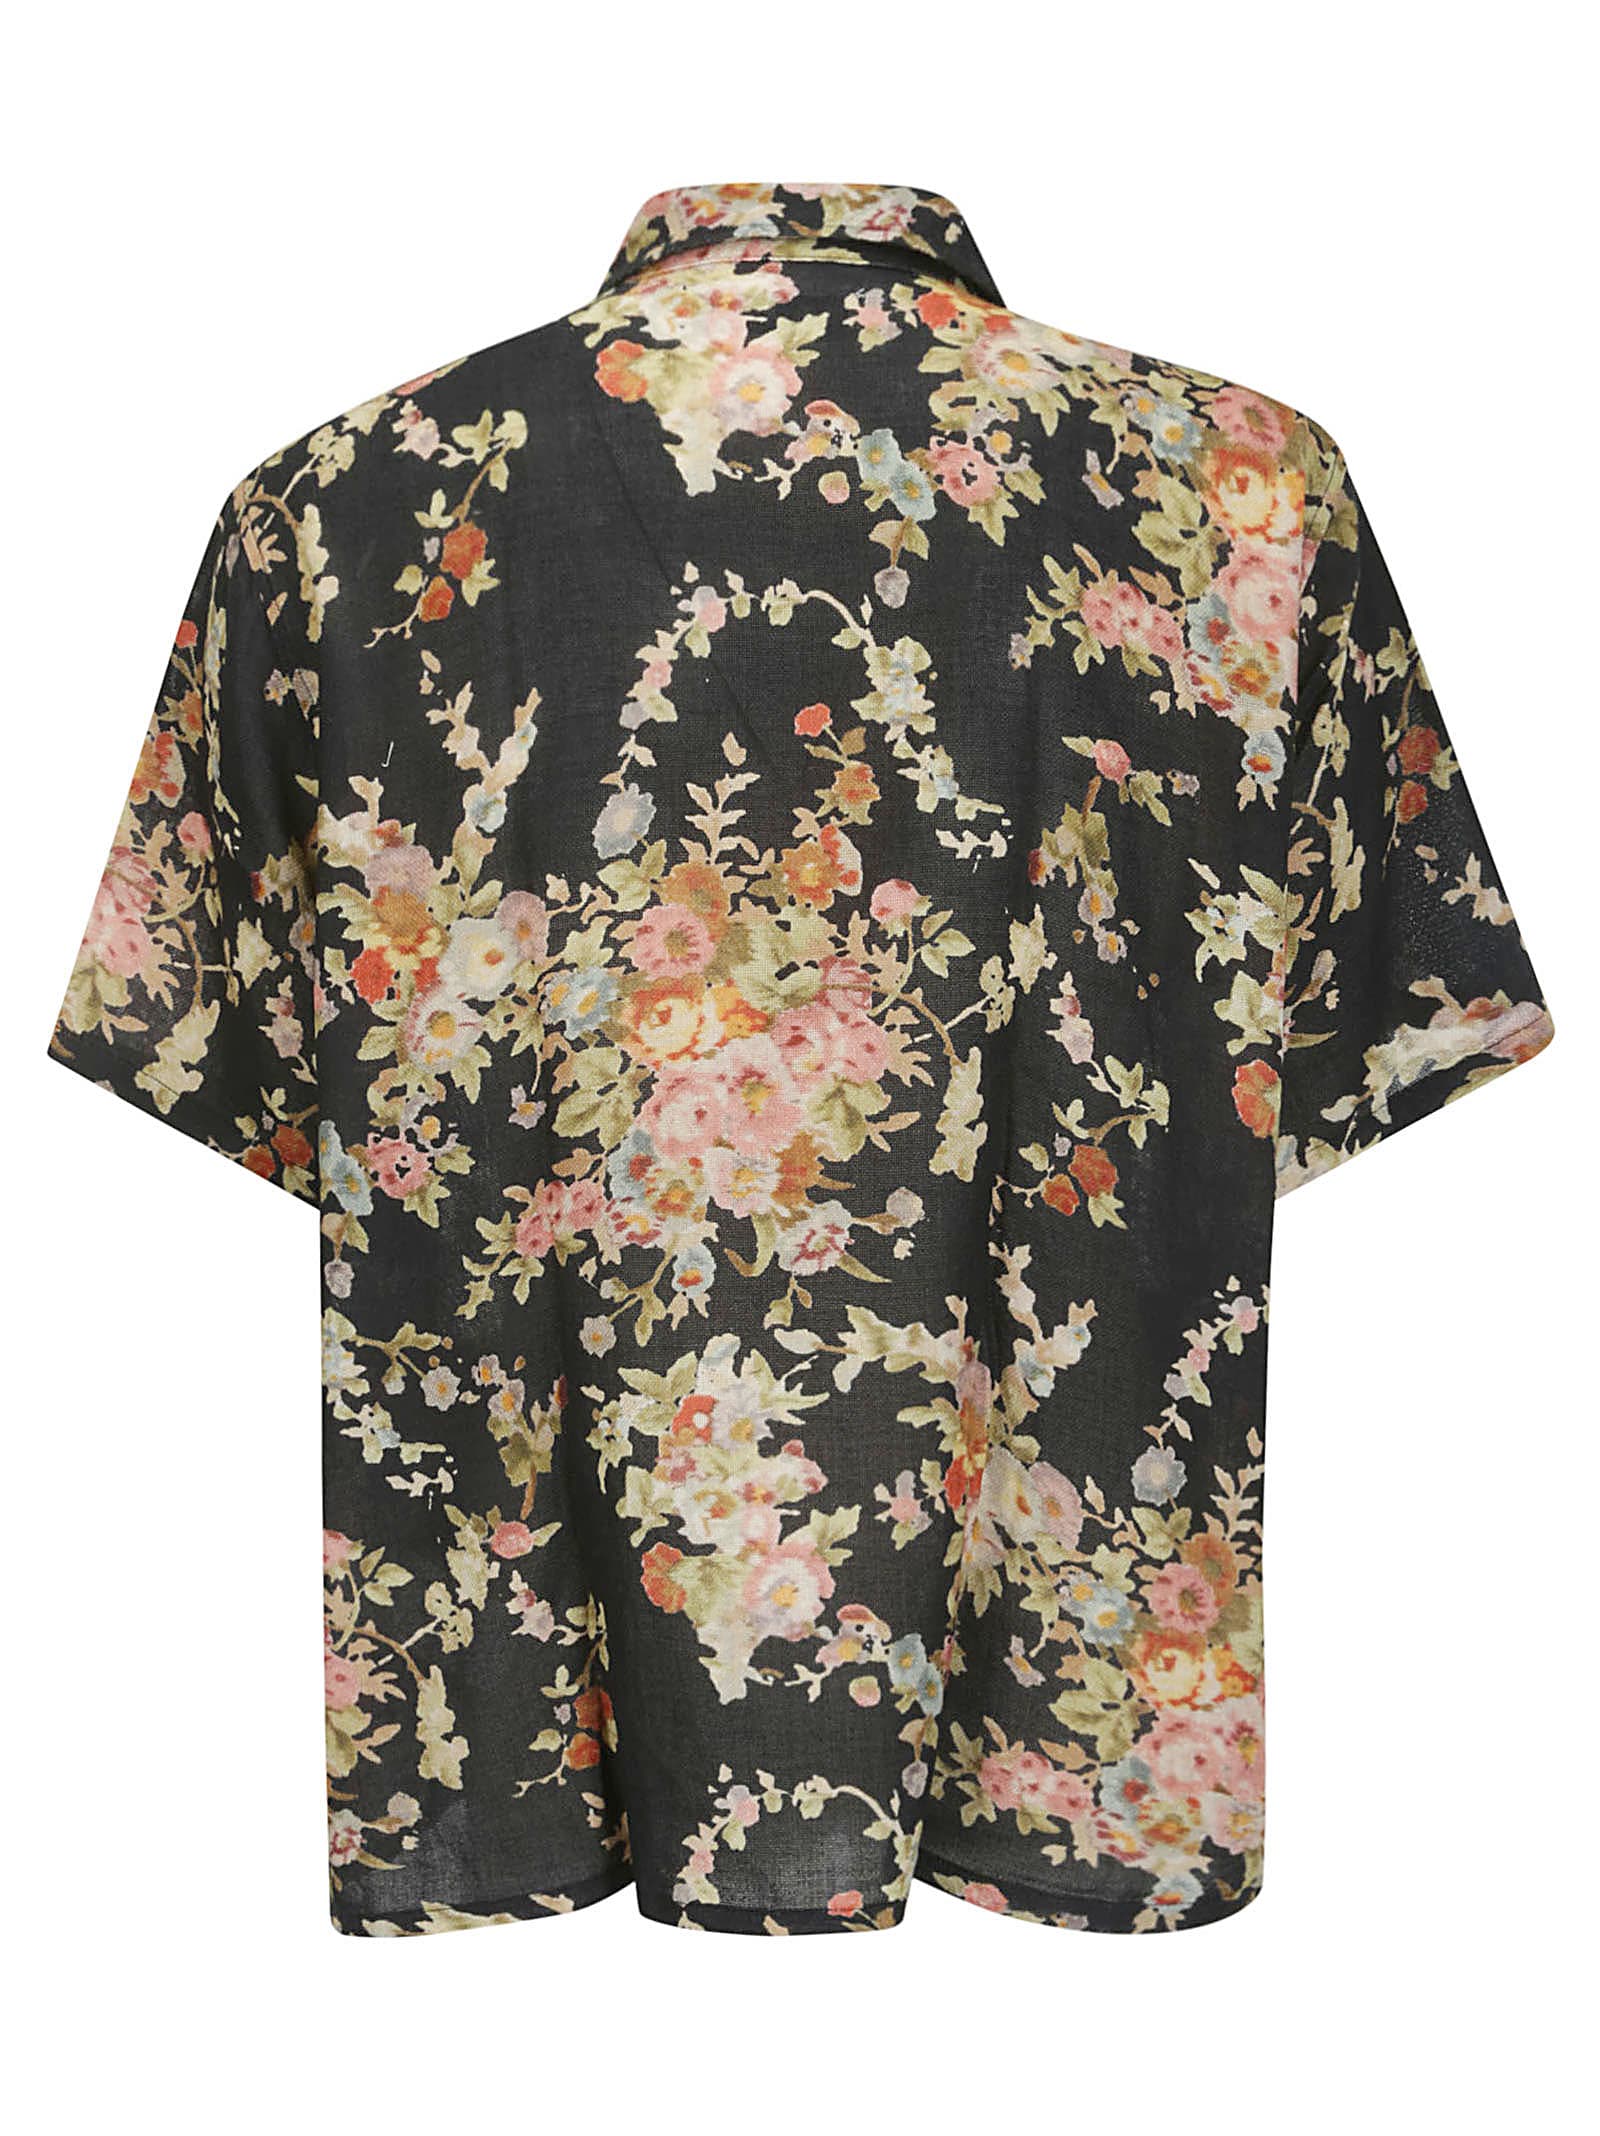 Shop Our Legacy Elder Shirt Shortsleeve In Black Floral Tapestry